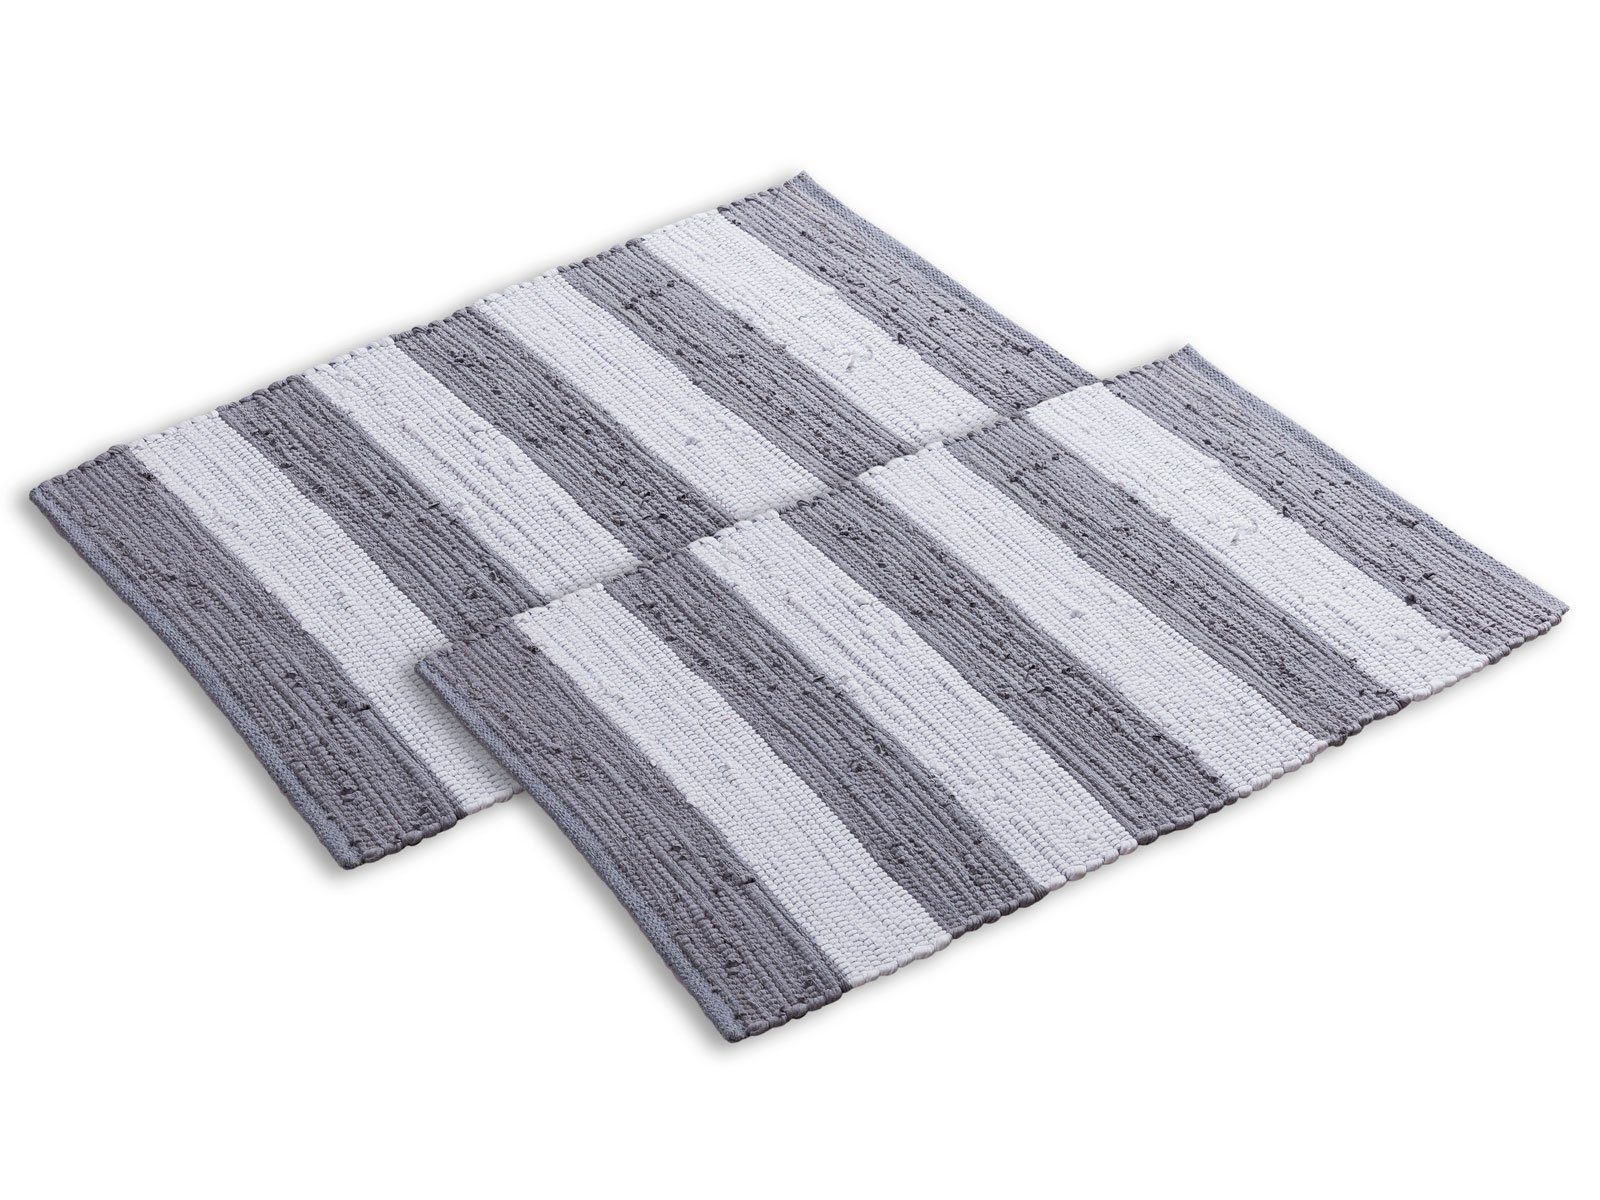 Teppich Badematte Set 2er groß Baumwolle grau-weiß Badezimmerteppich 80x50 Chindi, Minara